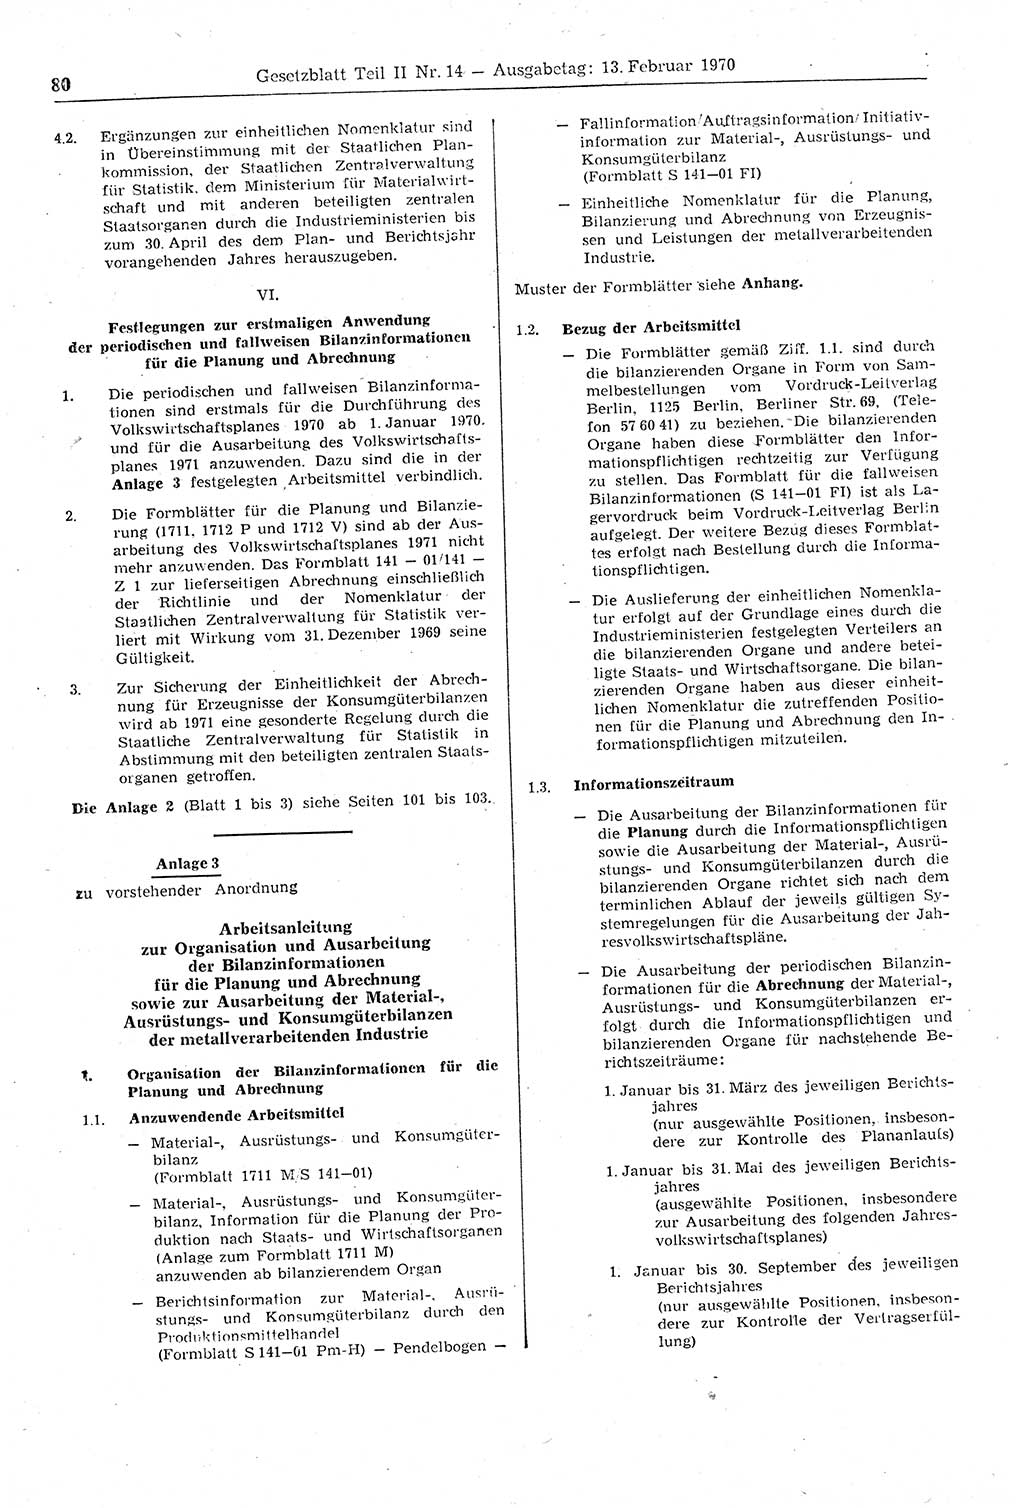 Gesetzblatt (GBl.) der Deutschen Demokratischen Republik (DDR) Teil ⅠⅠ 1970, Seite 80 (GBl. DDR ⅠⅠ 1970, S. 80)